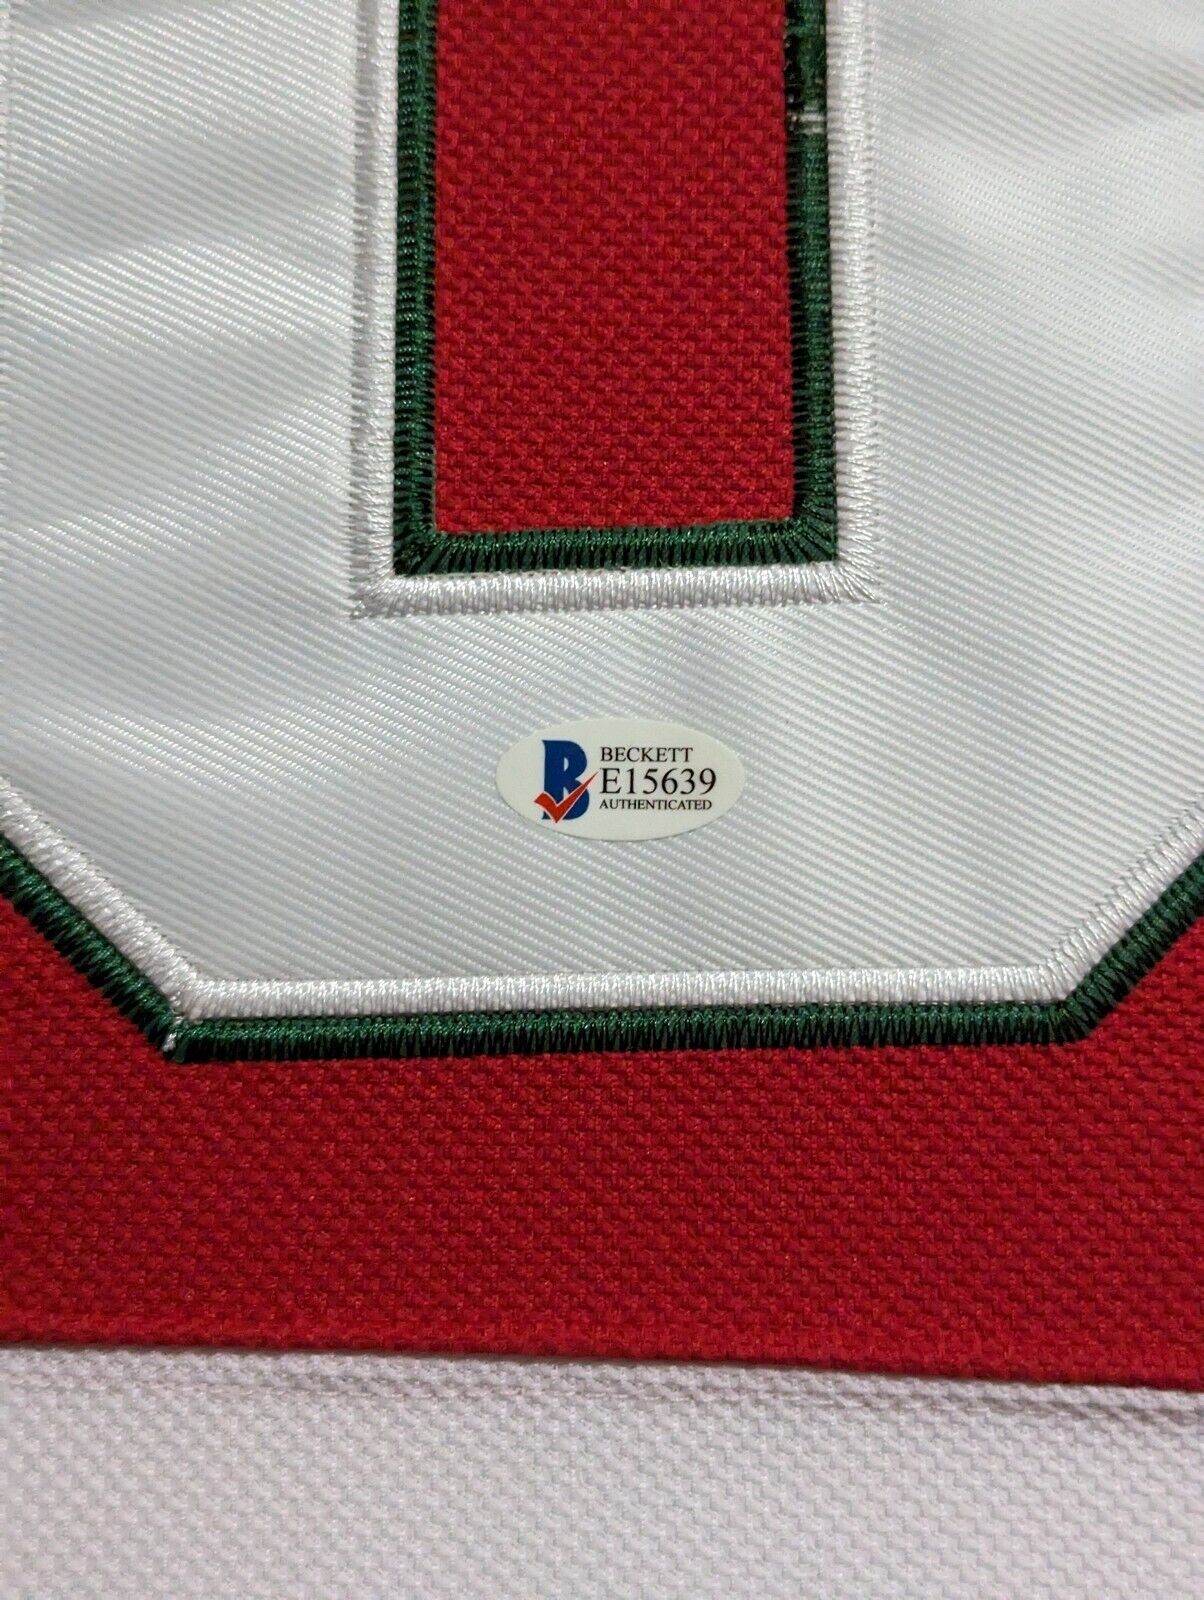 MVP Authentics Framed New Jersey Devils Martin Brodeur Autographed Signed Jersey Jsa Coa 899.10 sports jersey framing , jersey framing